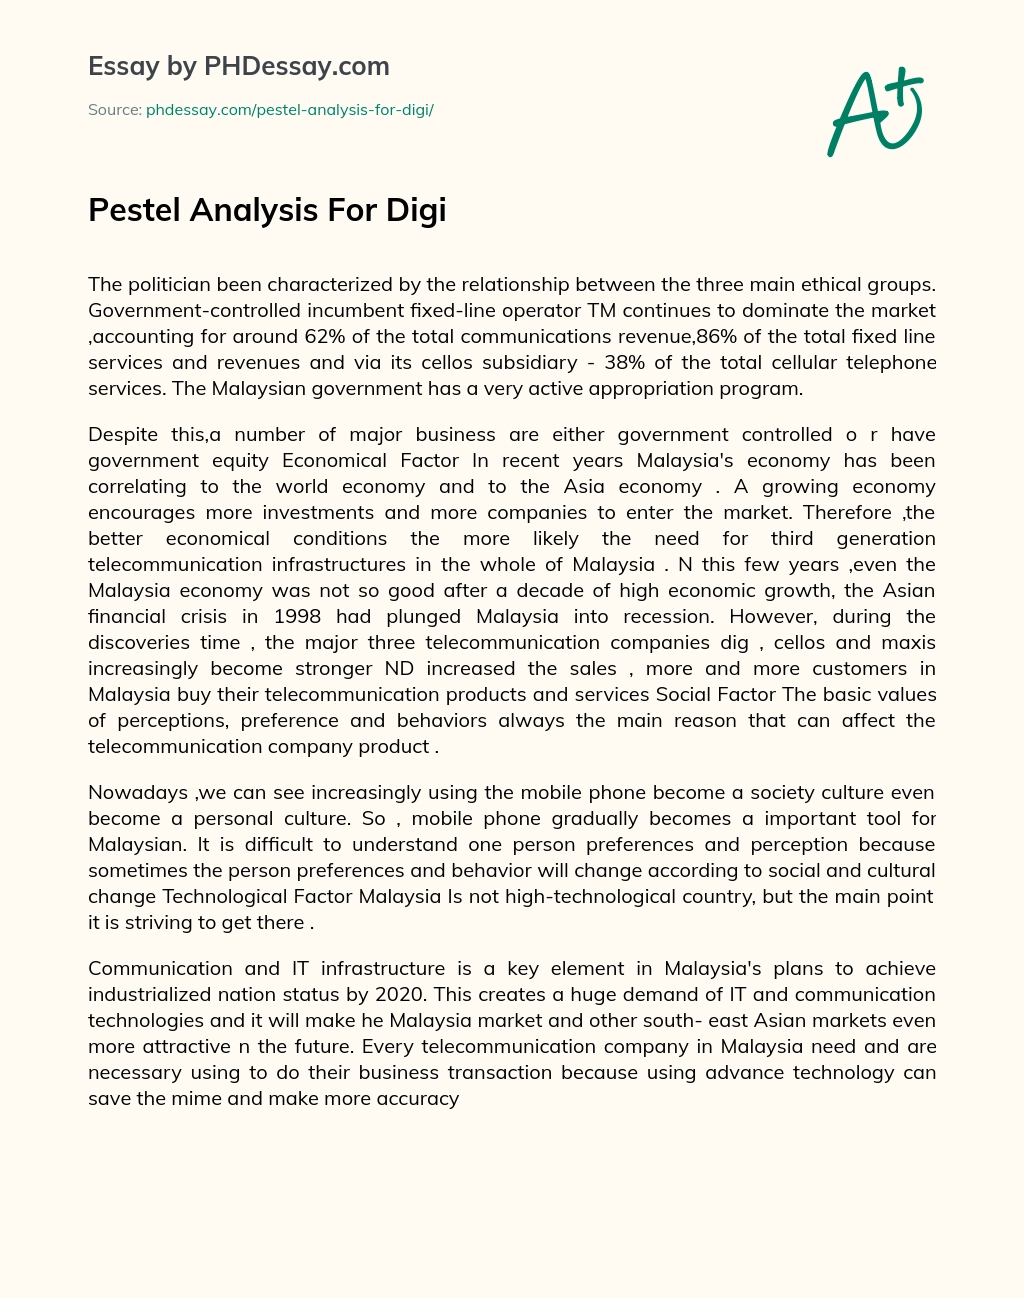 Pestel Analysis For Digi essay